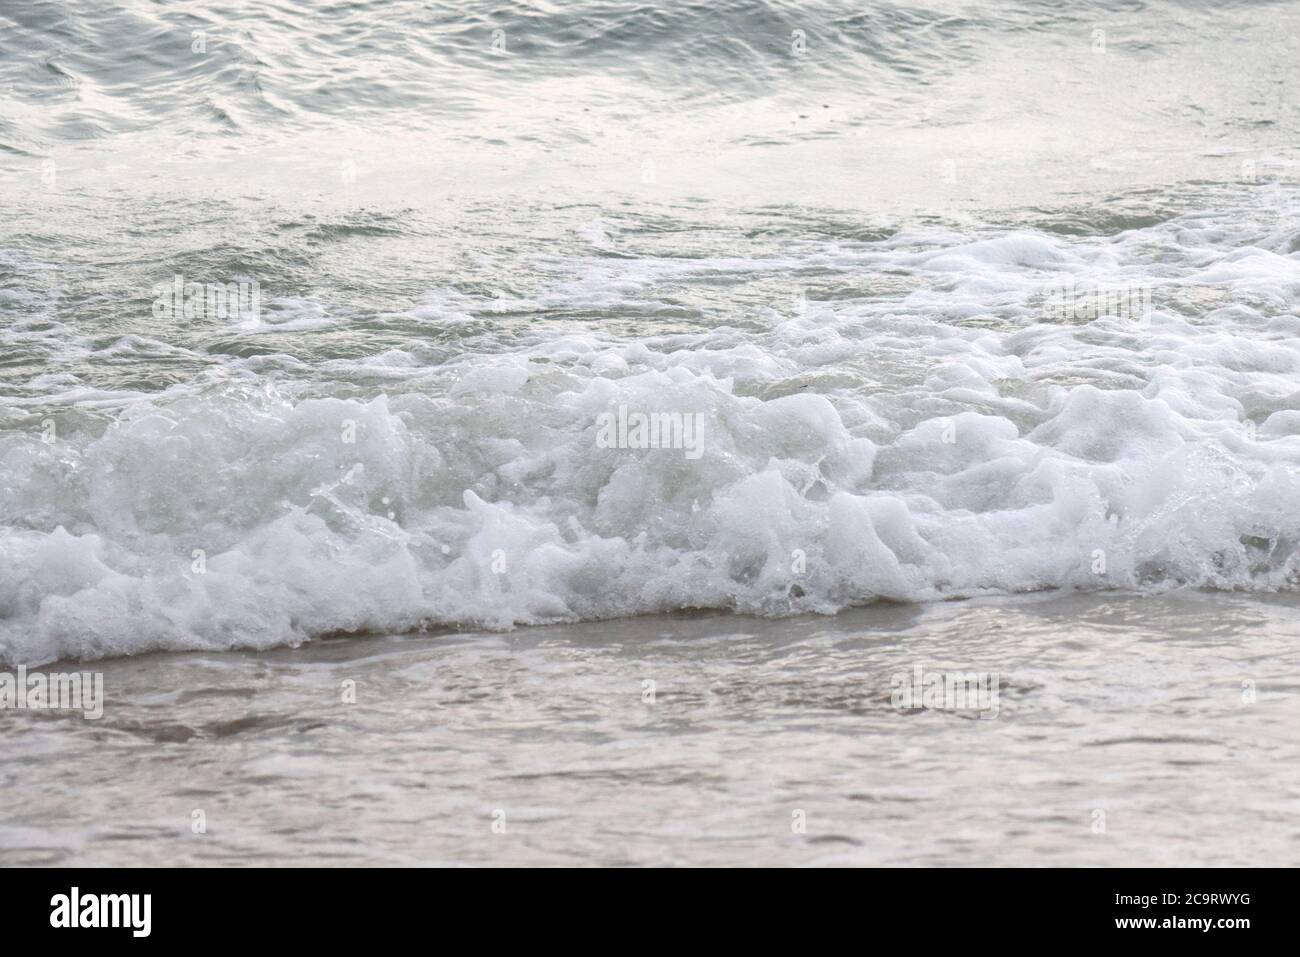 L'oceano è ruvido oggi con grandi onde. Foto Stock